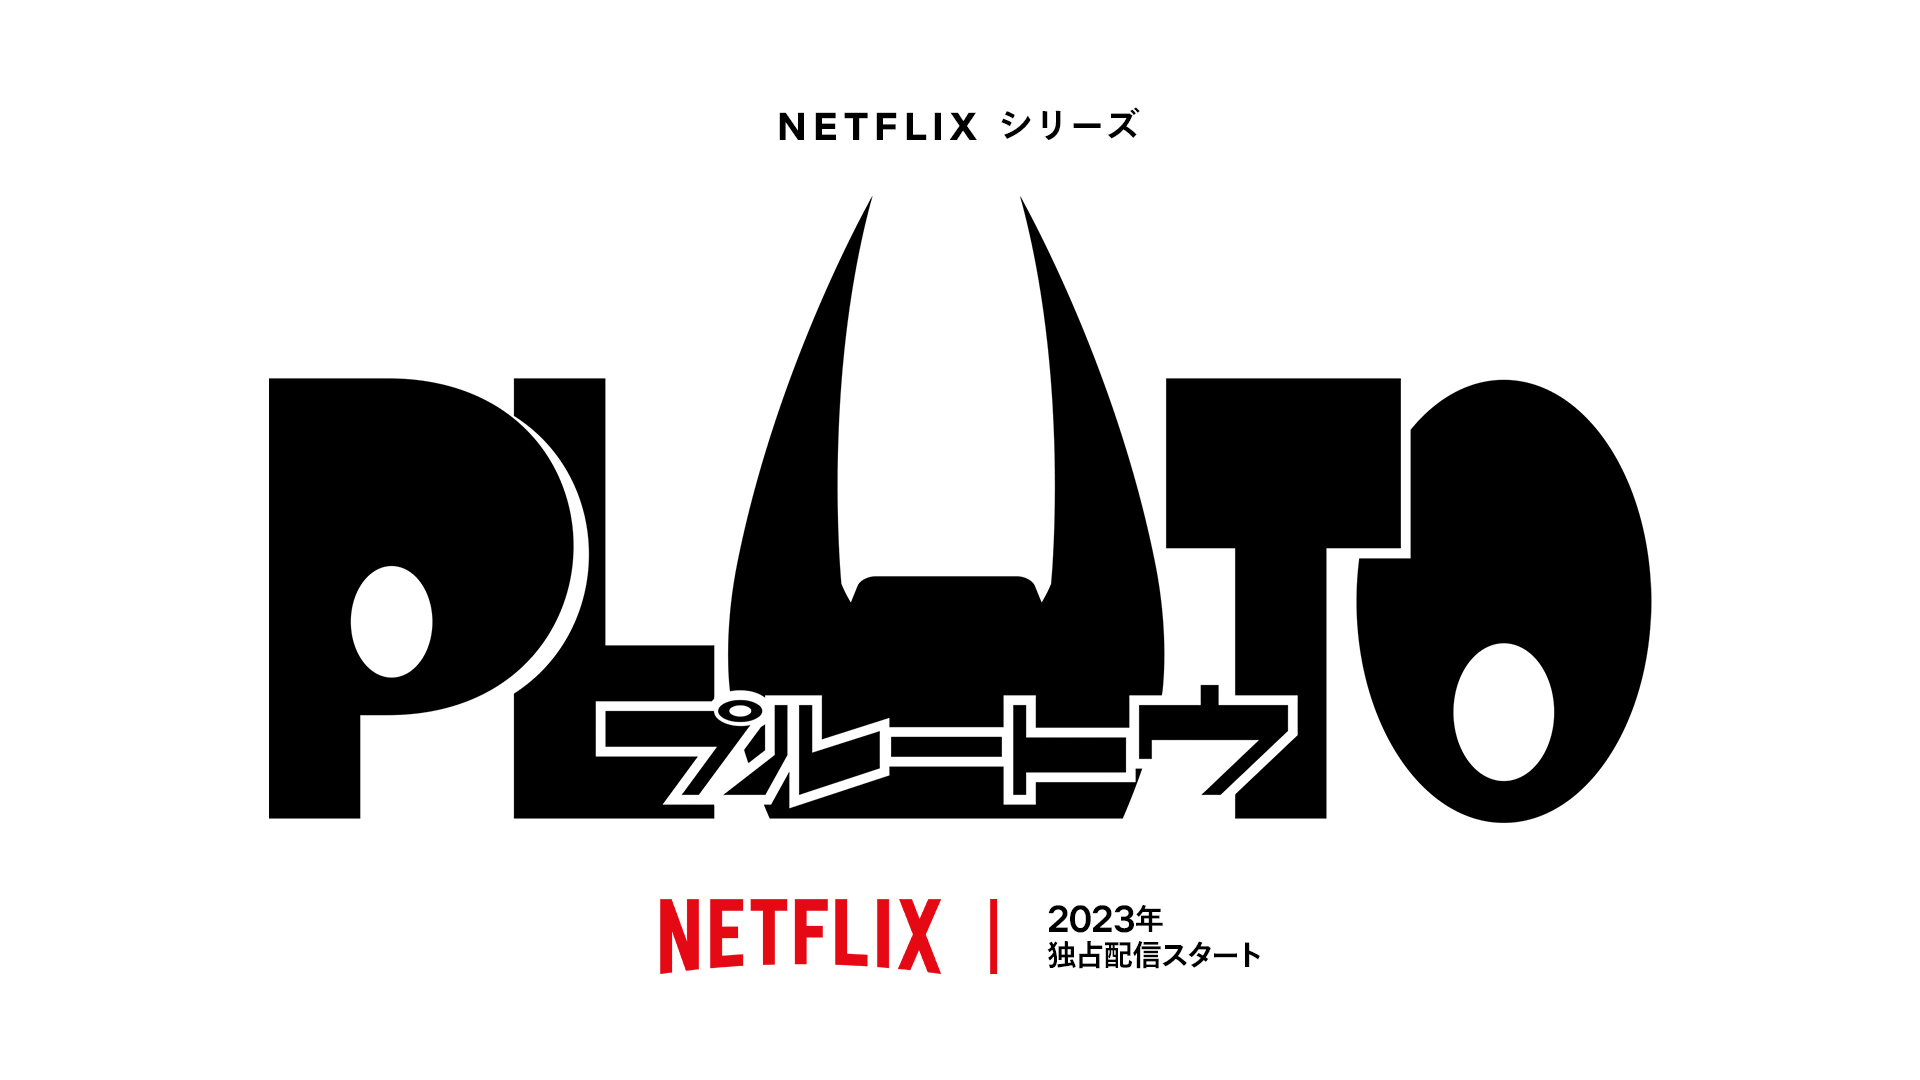 アニメ『PLUTO』 Netflix シリーズ「PLUTO」2023 年独占配信